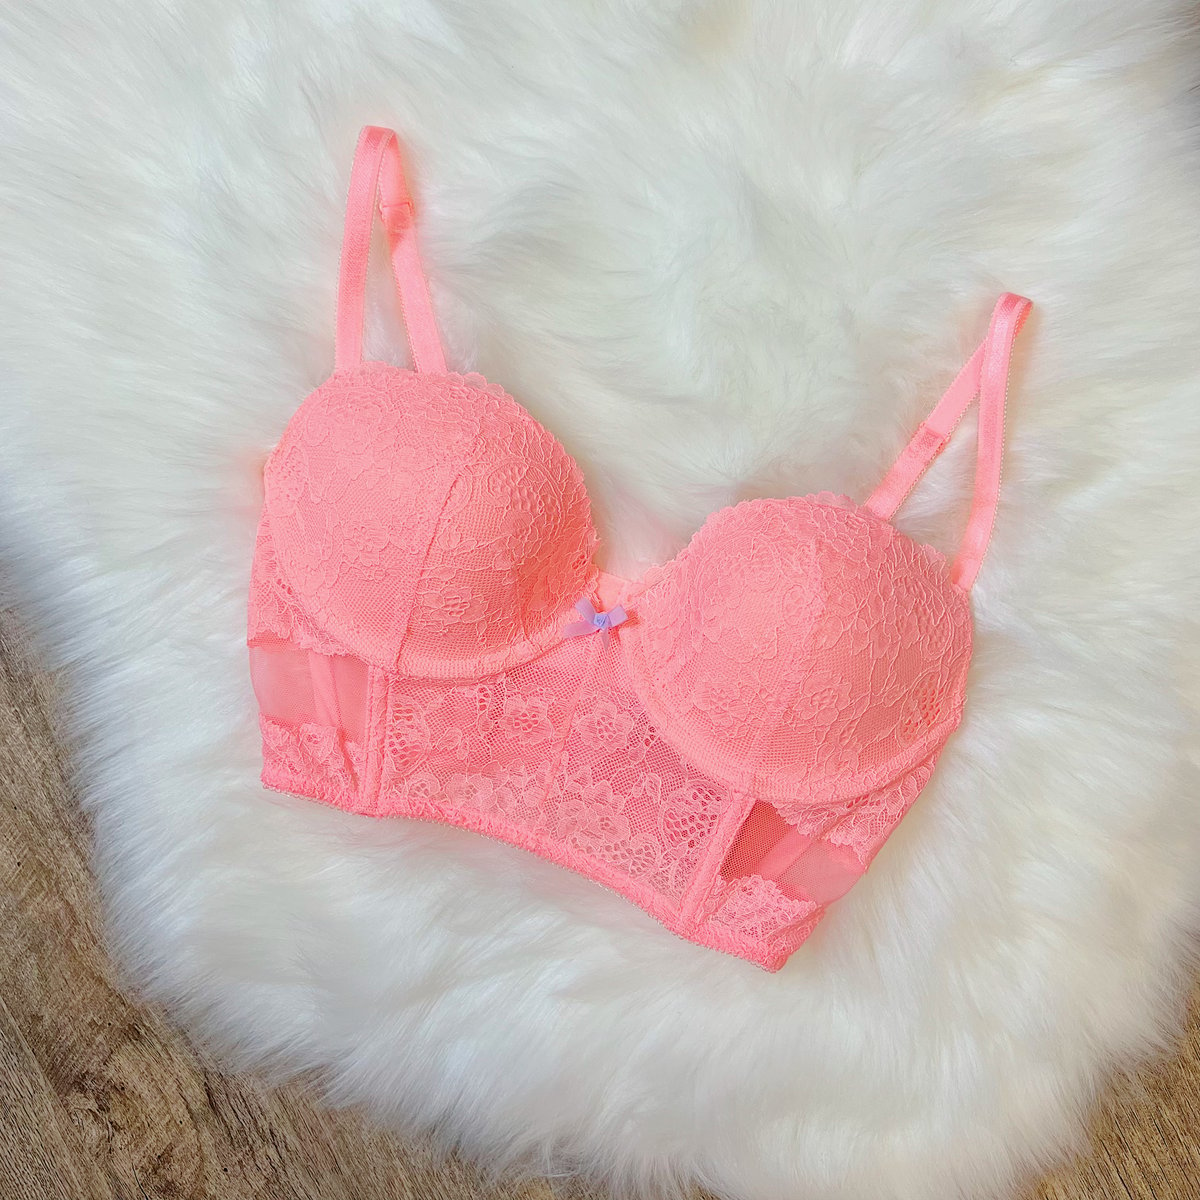 Size 32D/34C - Victoria's Secret Dream Angels Demi Peach Bustier